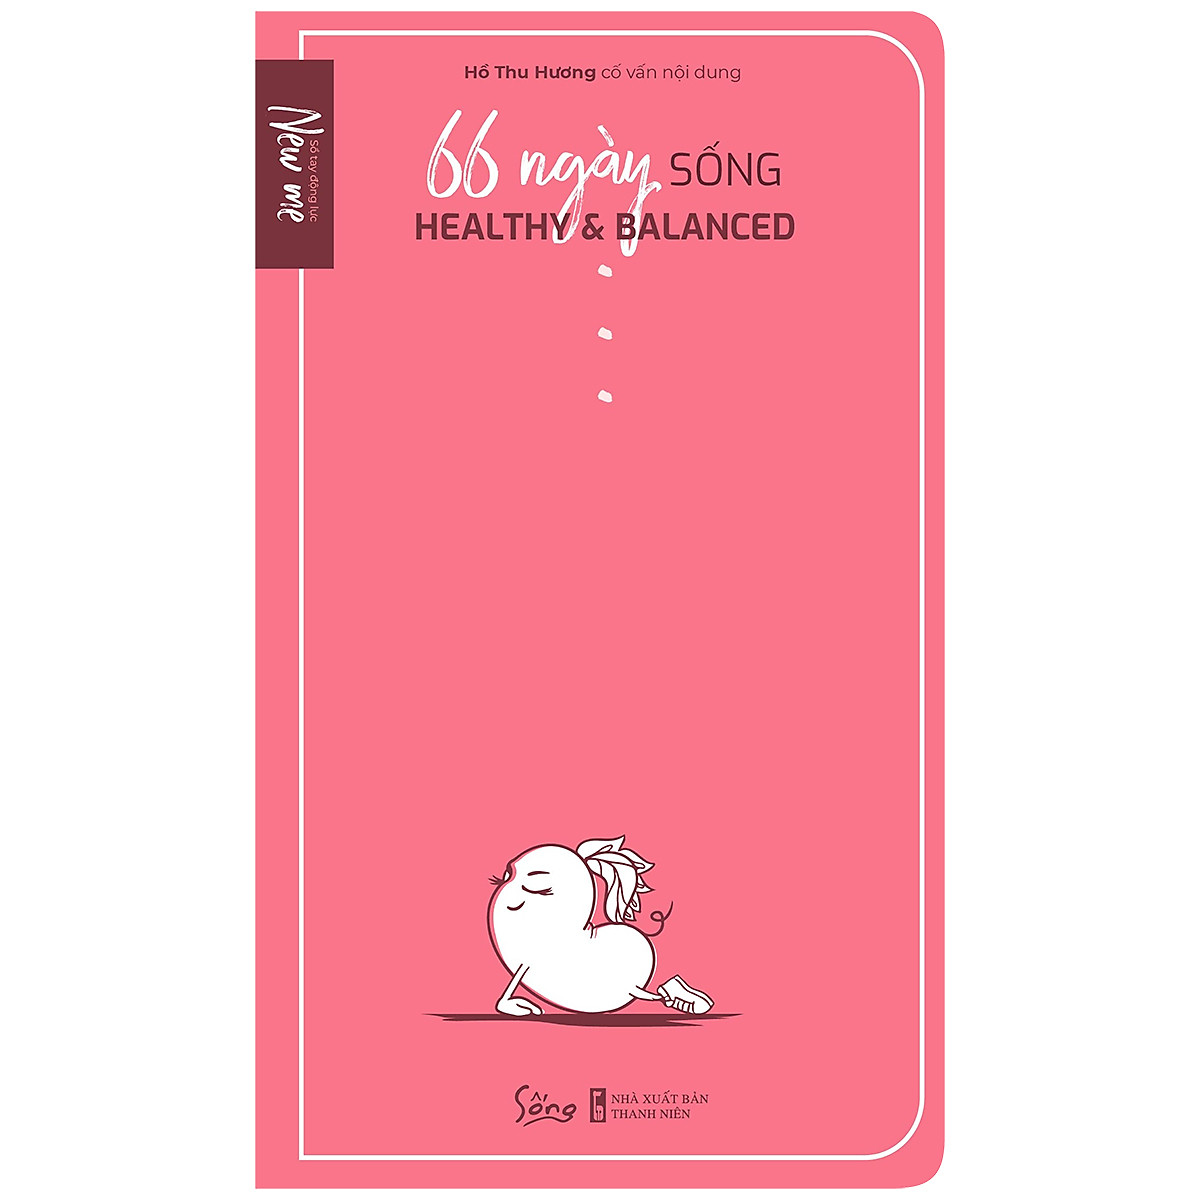 Combo 3 cuốn sách: Kỹ Năng Đối Diện Hiểm Nguy - Cẩm Nang Thiết Thực Cho Mọi Gia Đình + Khi Hơi Thở Hóa Thinh Không  + 66 Ngày Sống Healthy &amp; Balanced